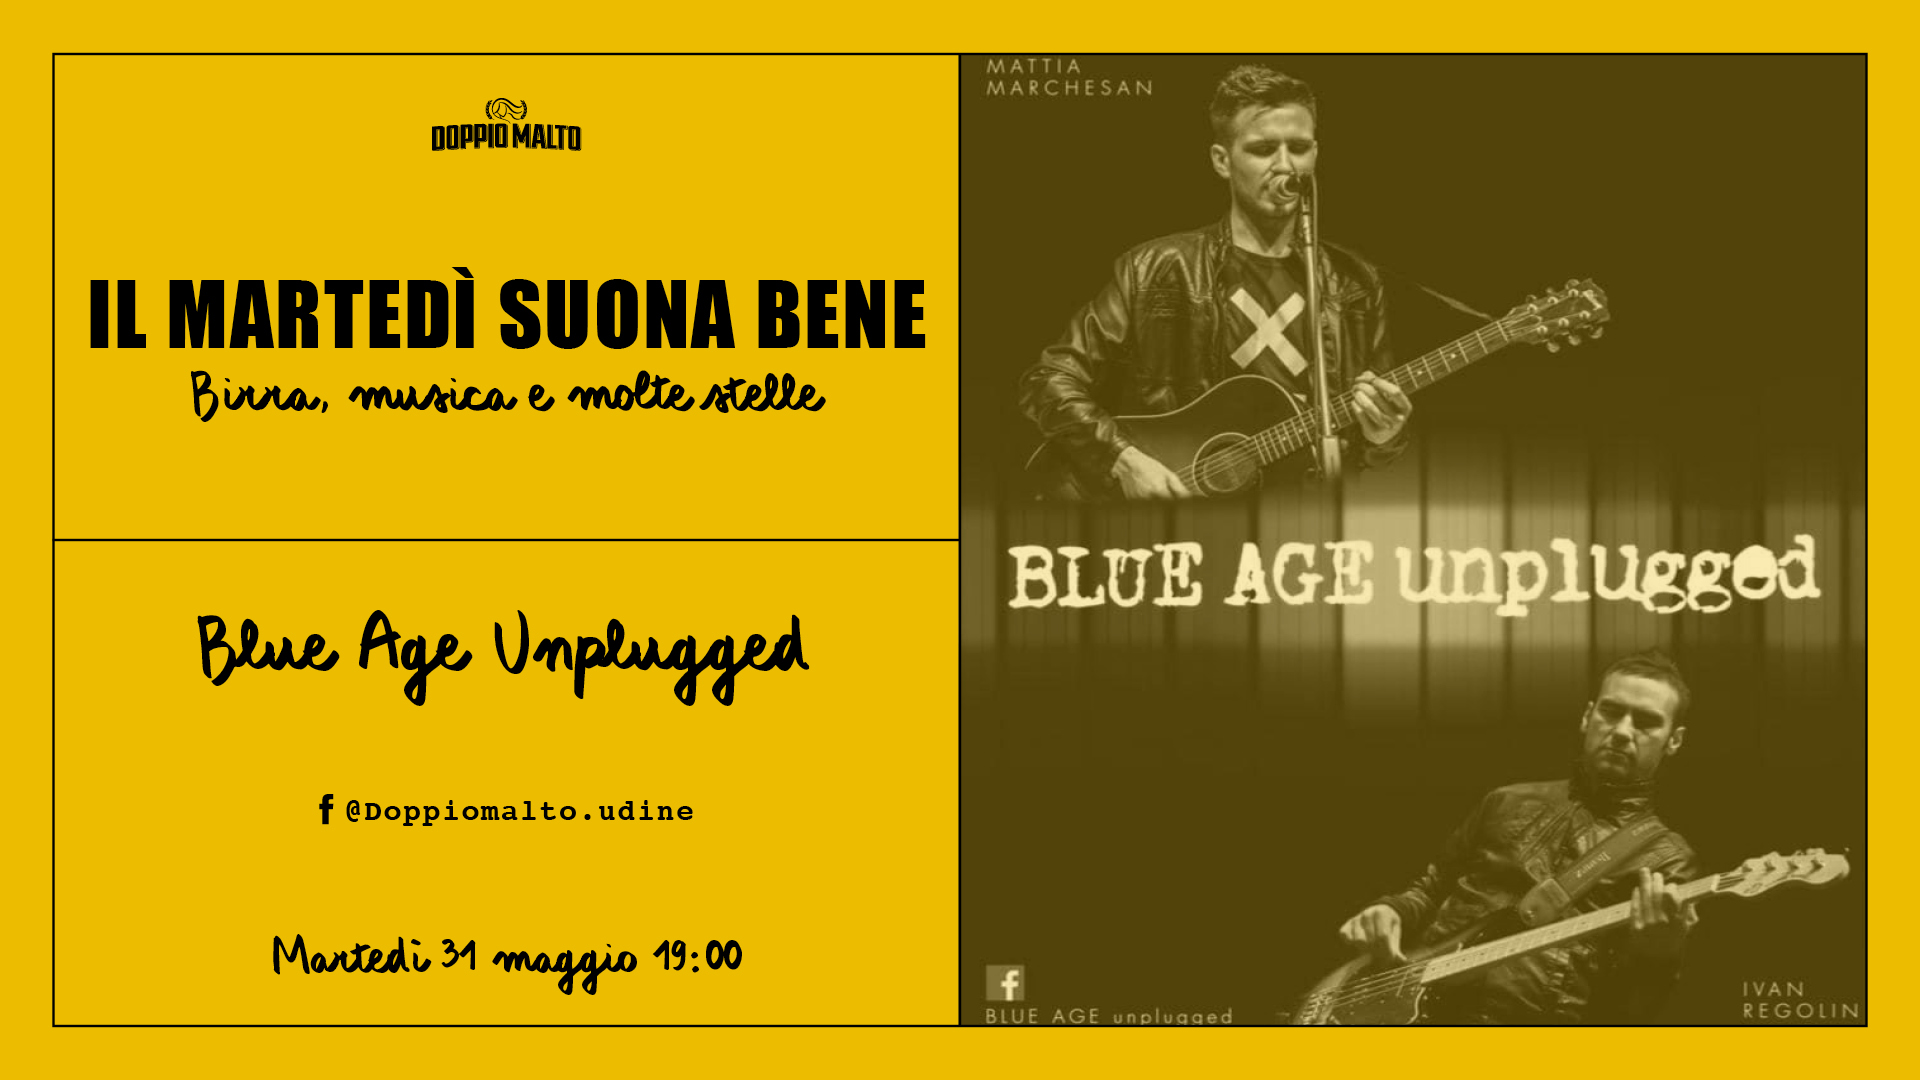 Blue Age Unplugged - Il martedì suona bene